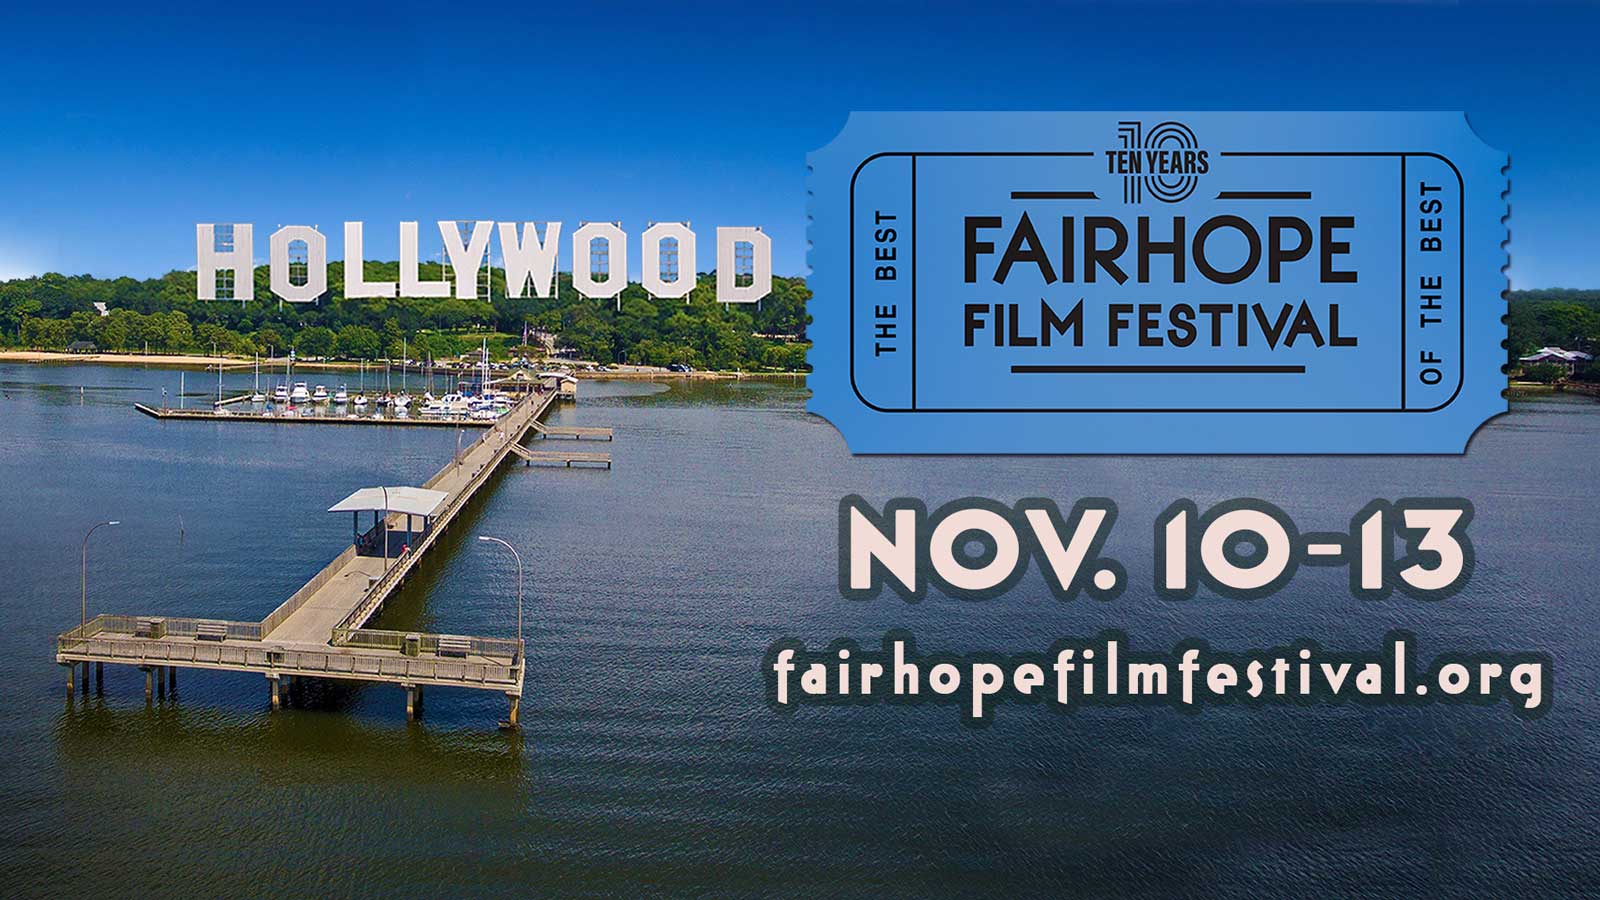 Fairhope Film Festival Celebrates 10th Anniversary